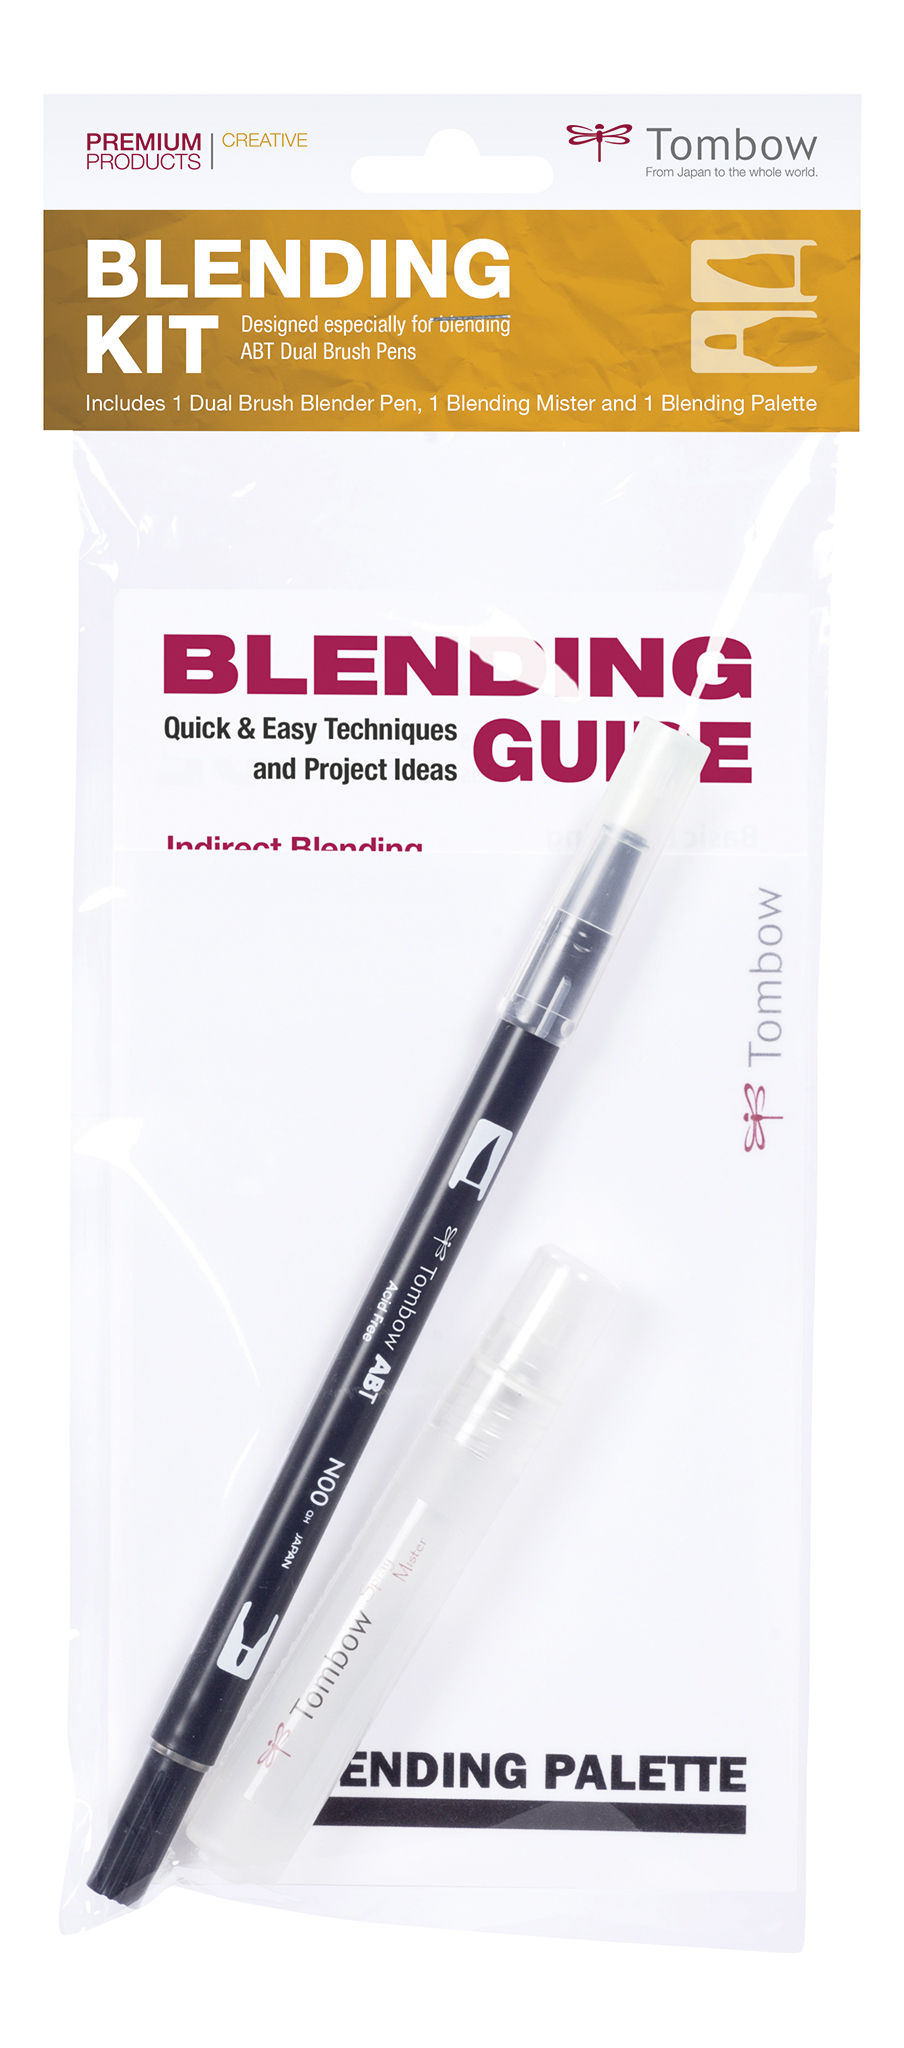 Blending kit for ABT pens